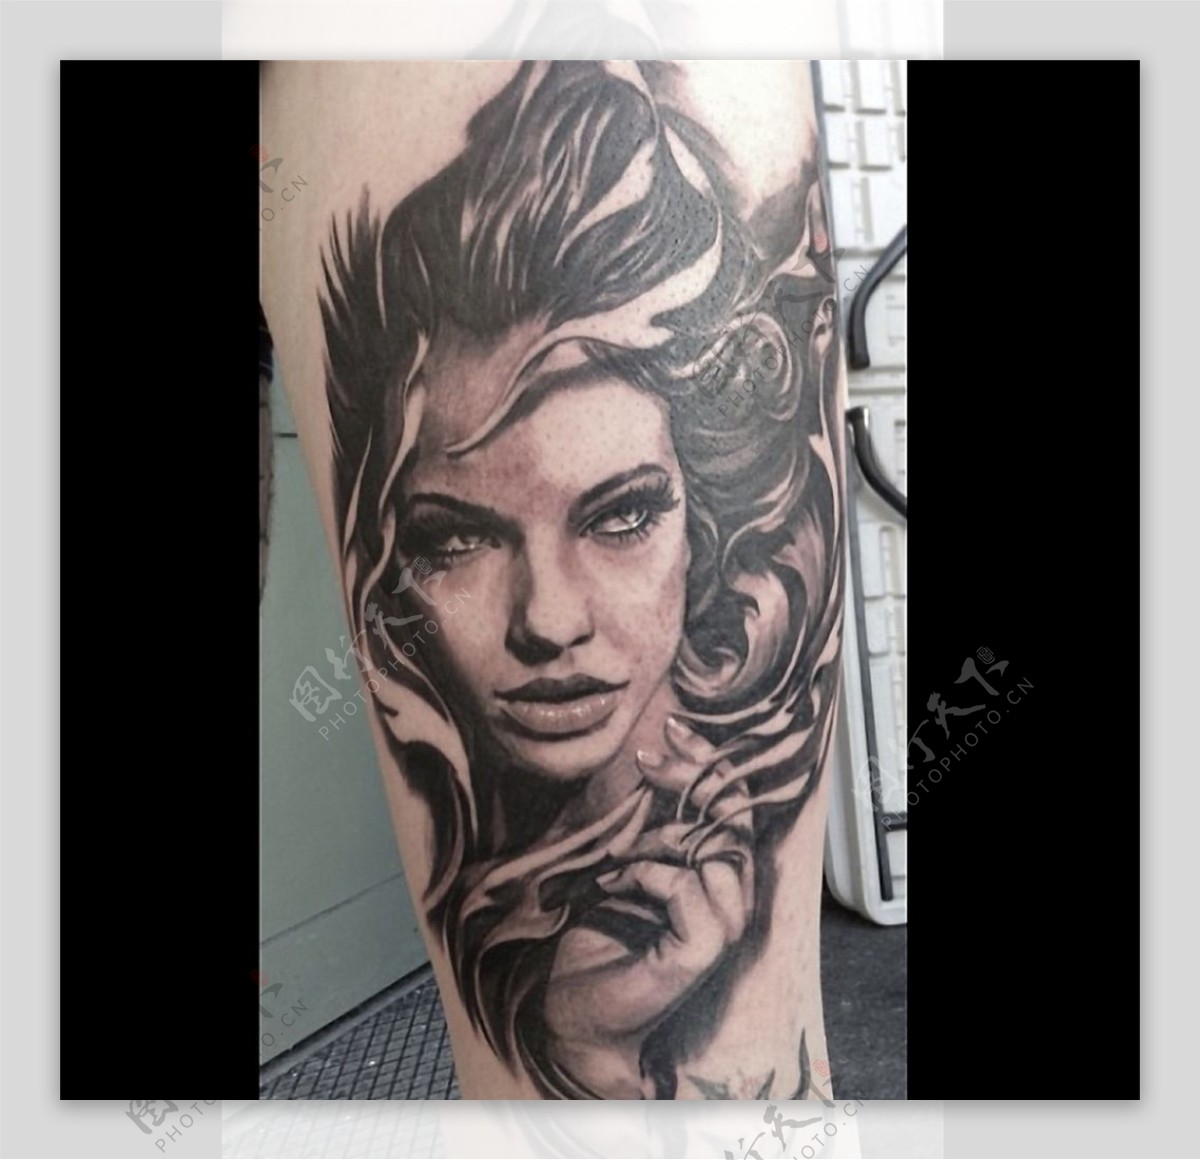 ArtStation - Tattoos girl